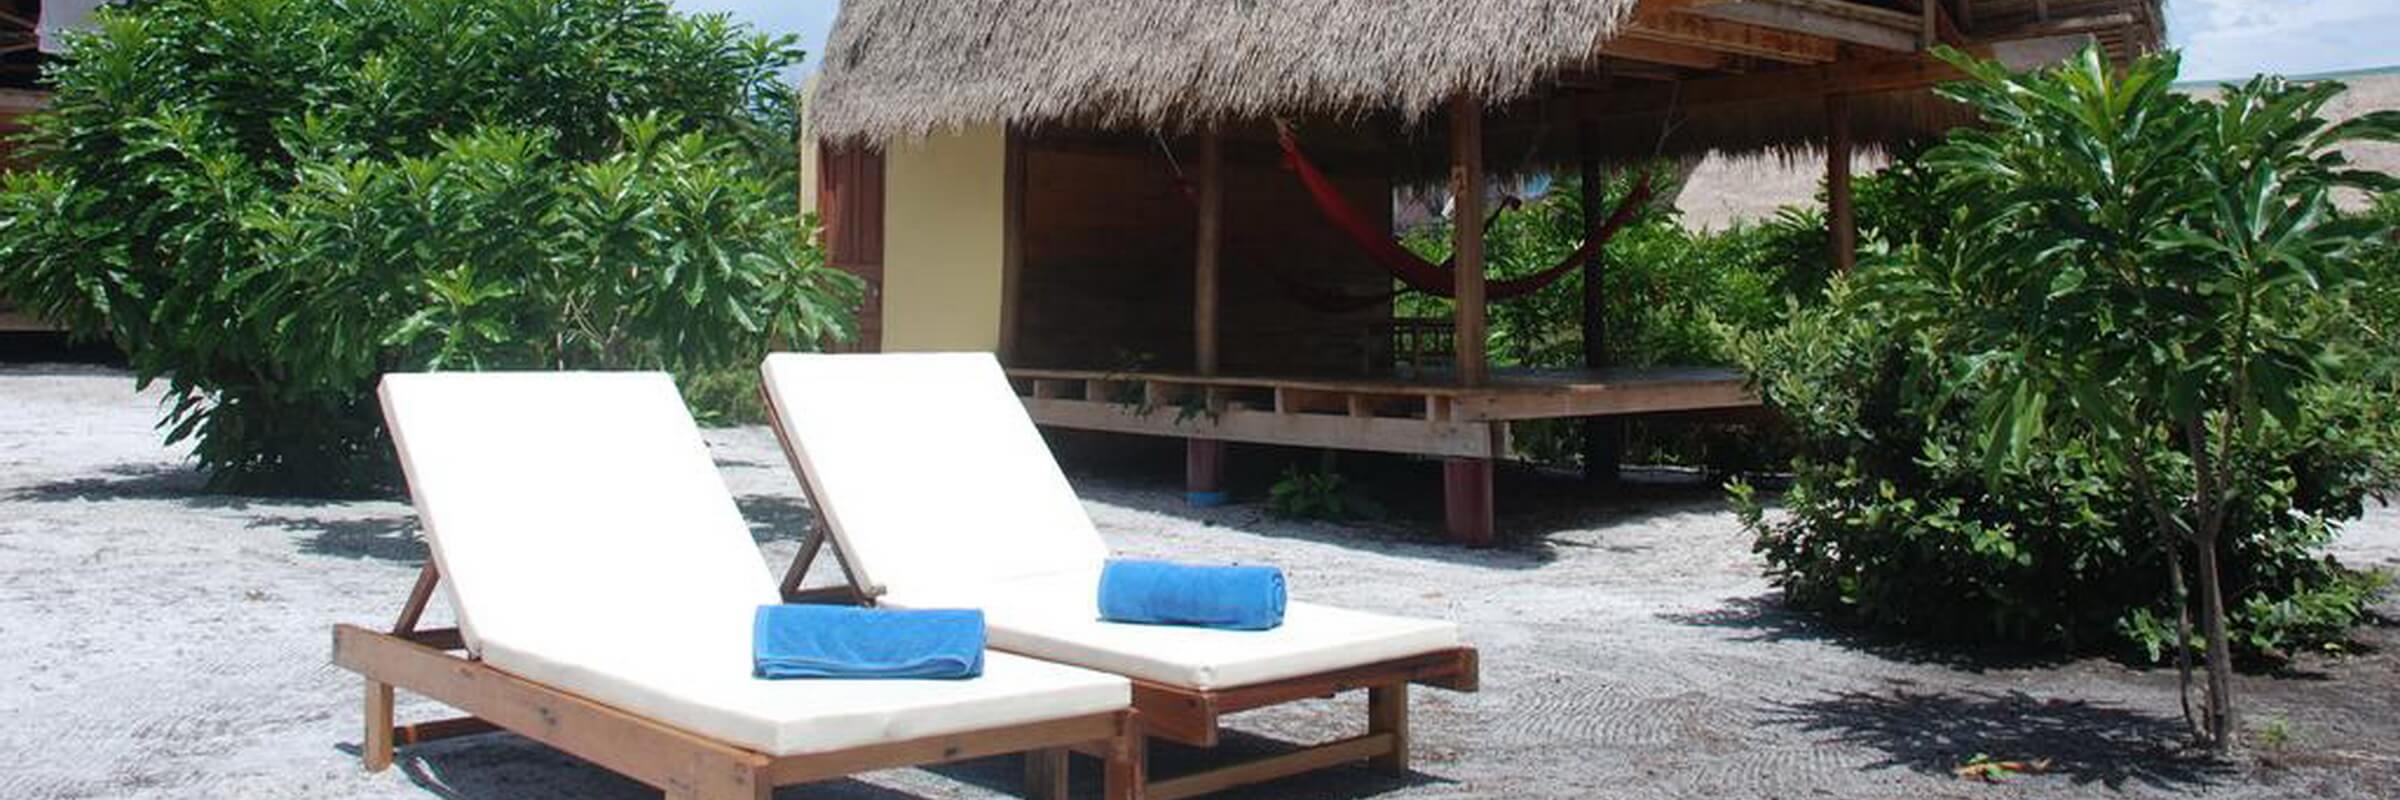 Die 2-stöckigen Bungalows des Cita Resorts liegen in einer weitläufigen Gartenanlage direkt am Strand.